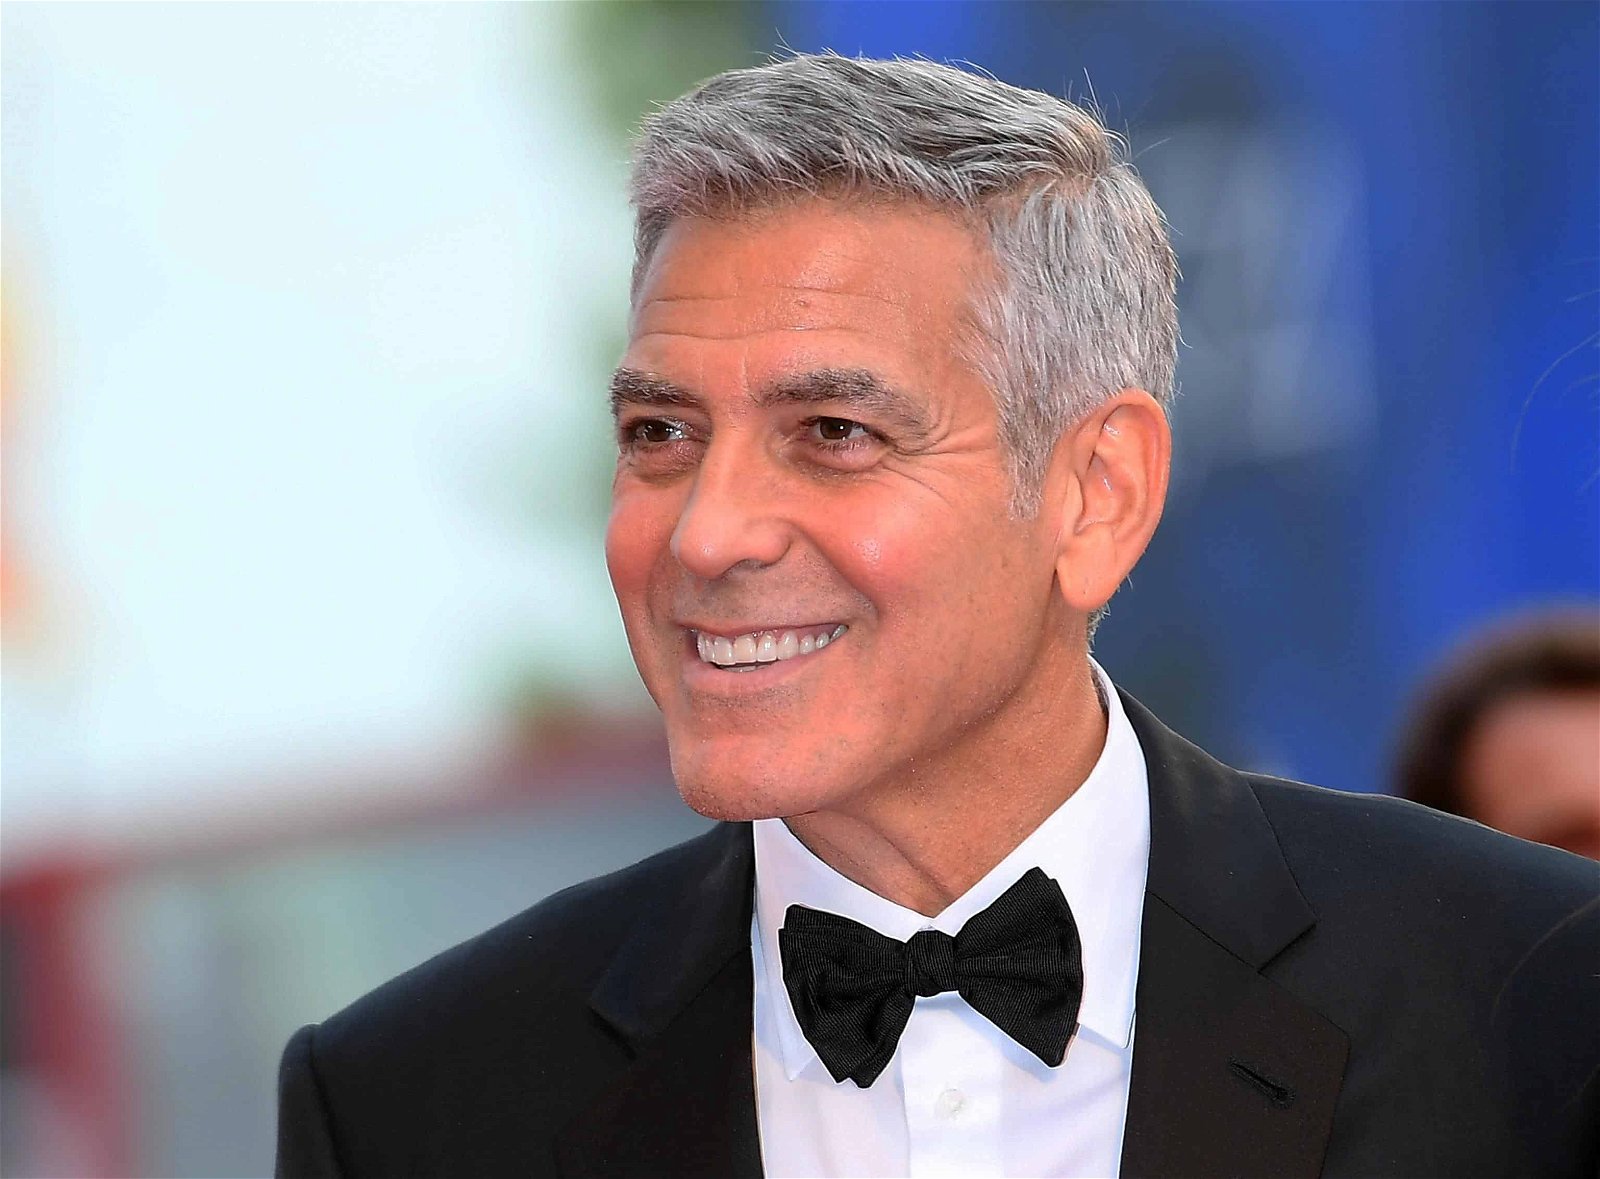 George Clooney in kostuum met strikje lacht.